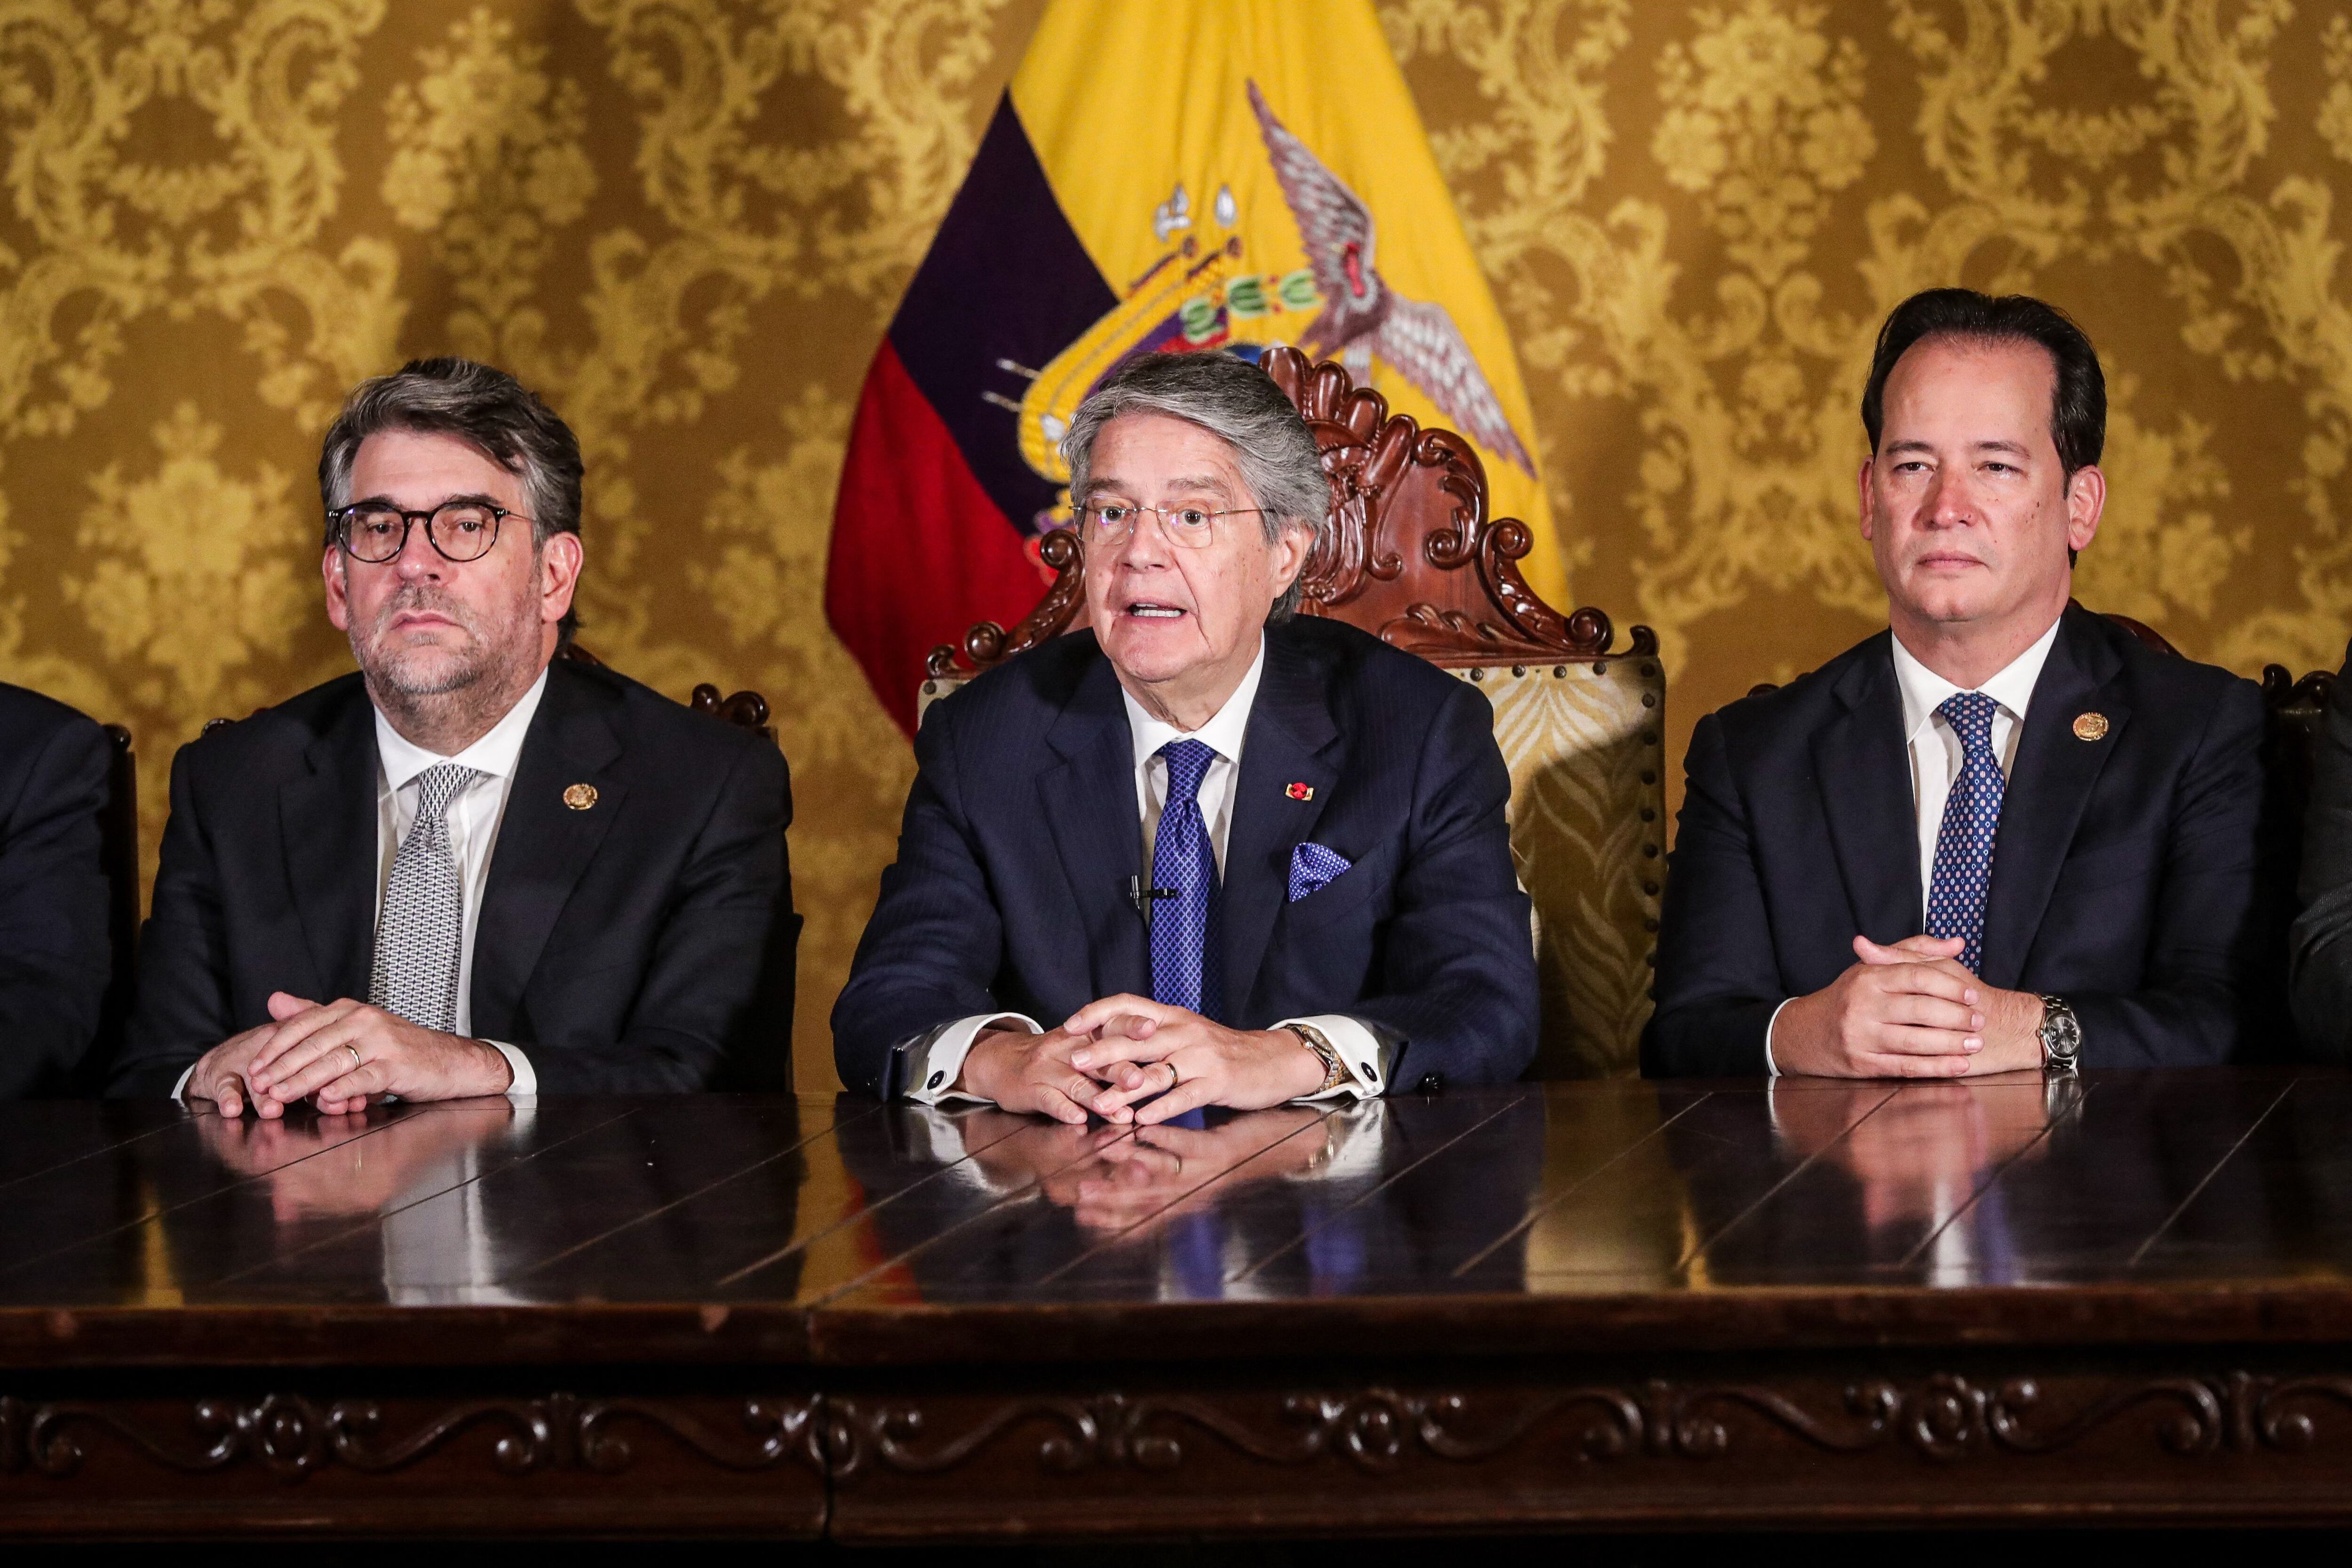 El presidente ecuatoriano Guillermo Lasso (centro), quien enfrentaba un proceso de juicio político en el Congreso por presunta corrupción, emitió un decreto disolviendo el órgano legislativo. Foto: